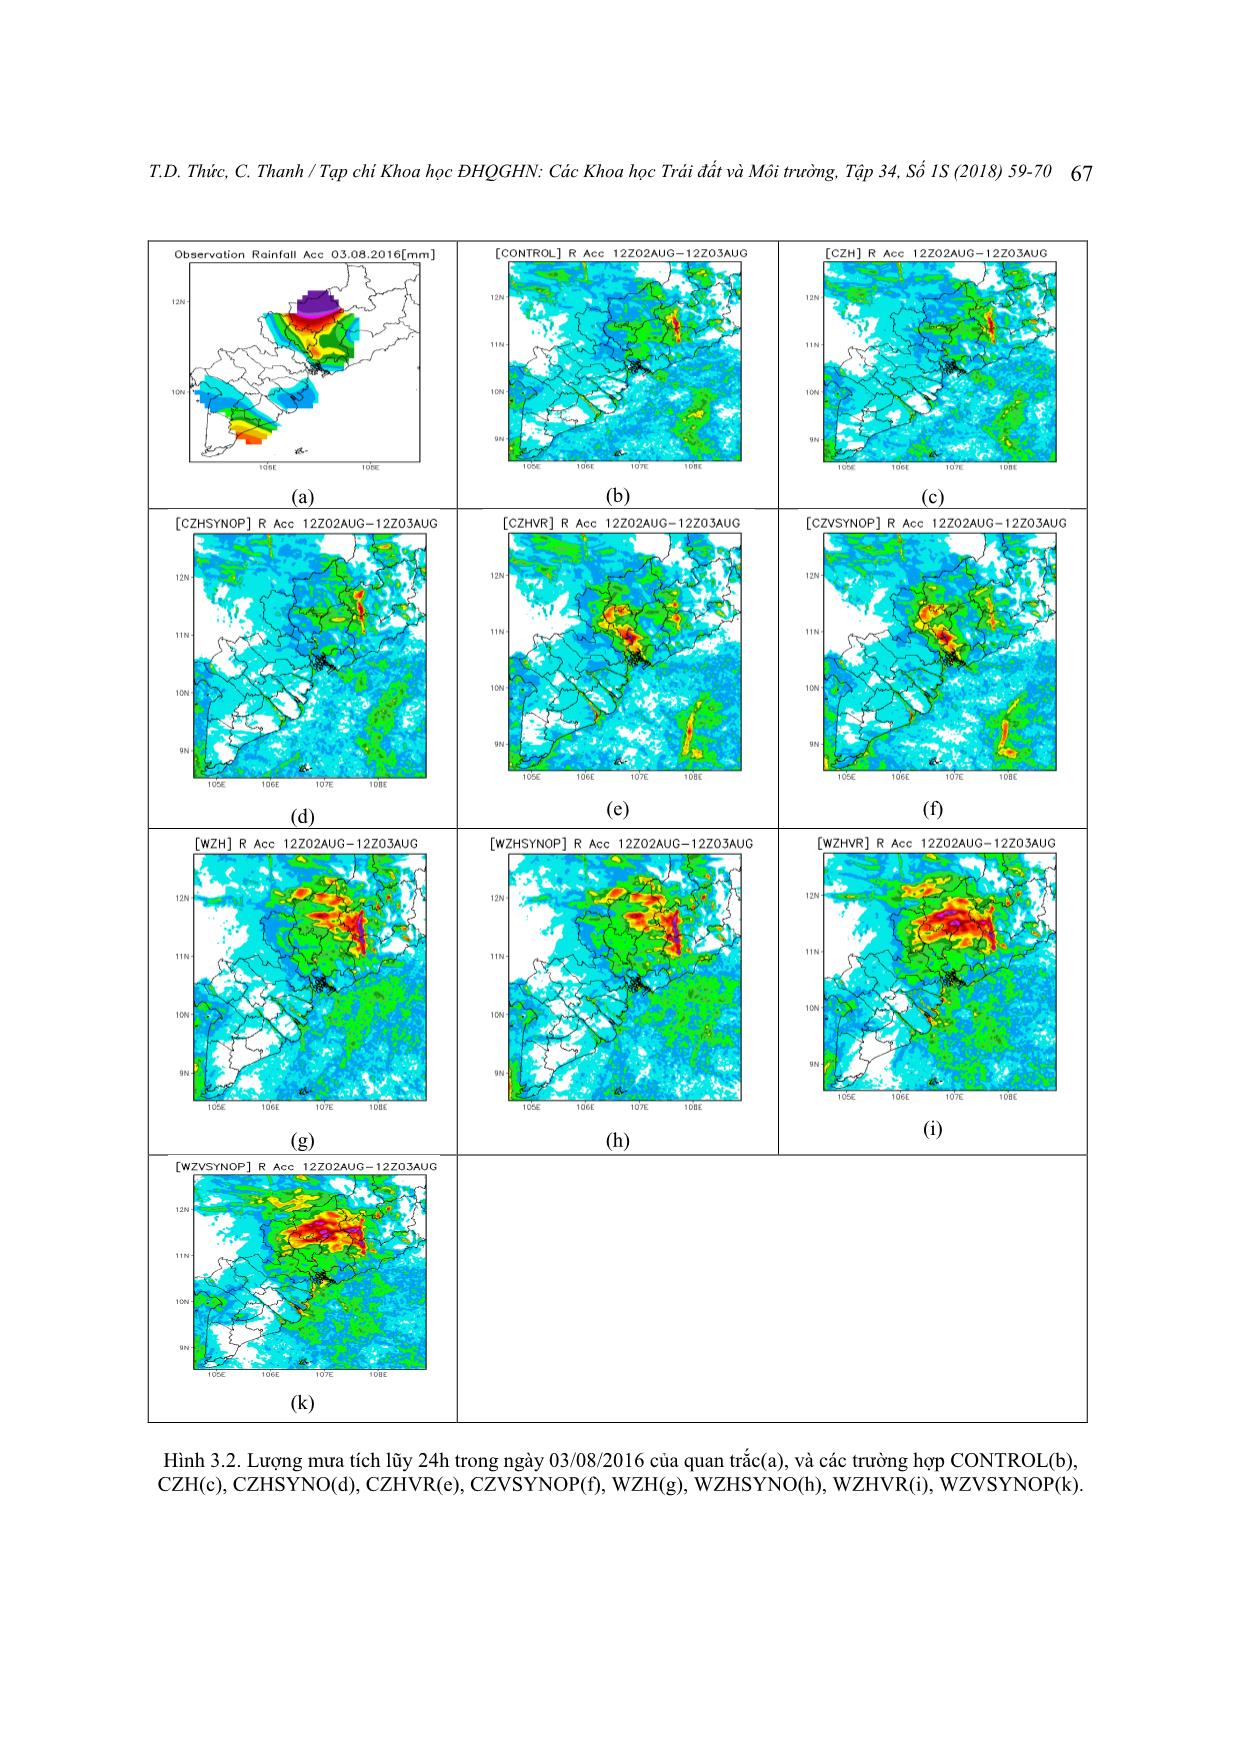 Thử nghiệm đồng hóa dữ liệu radar trong mô hình WRF để dự báo mưa lớn cho khu vực Thành phố Hồ Chí Minh trang 9